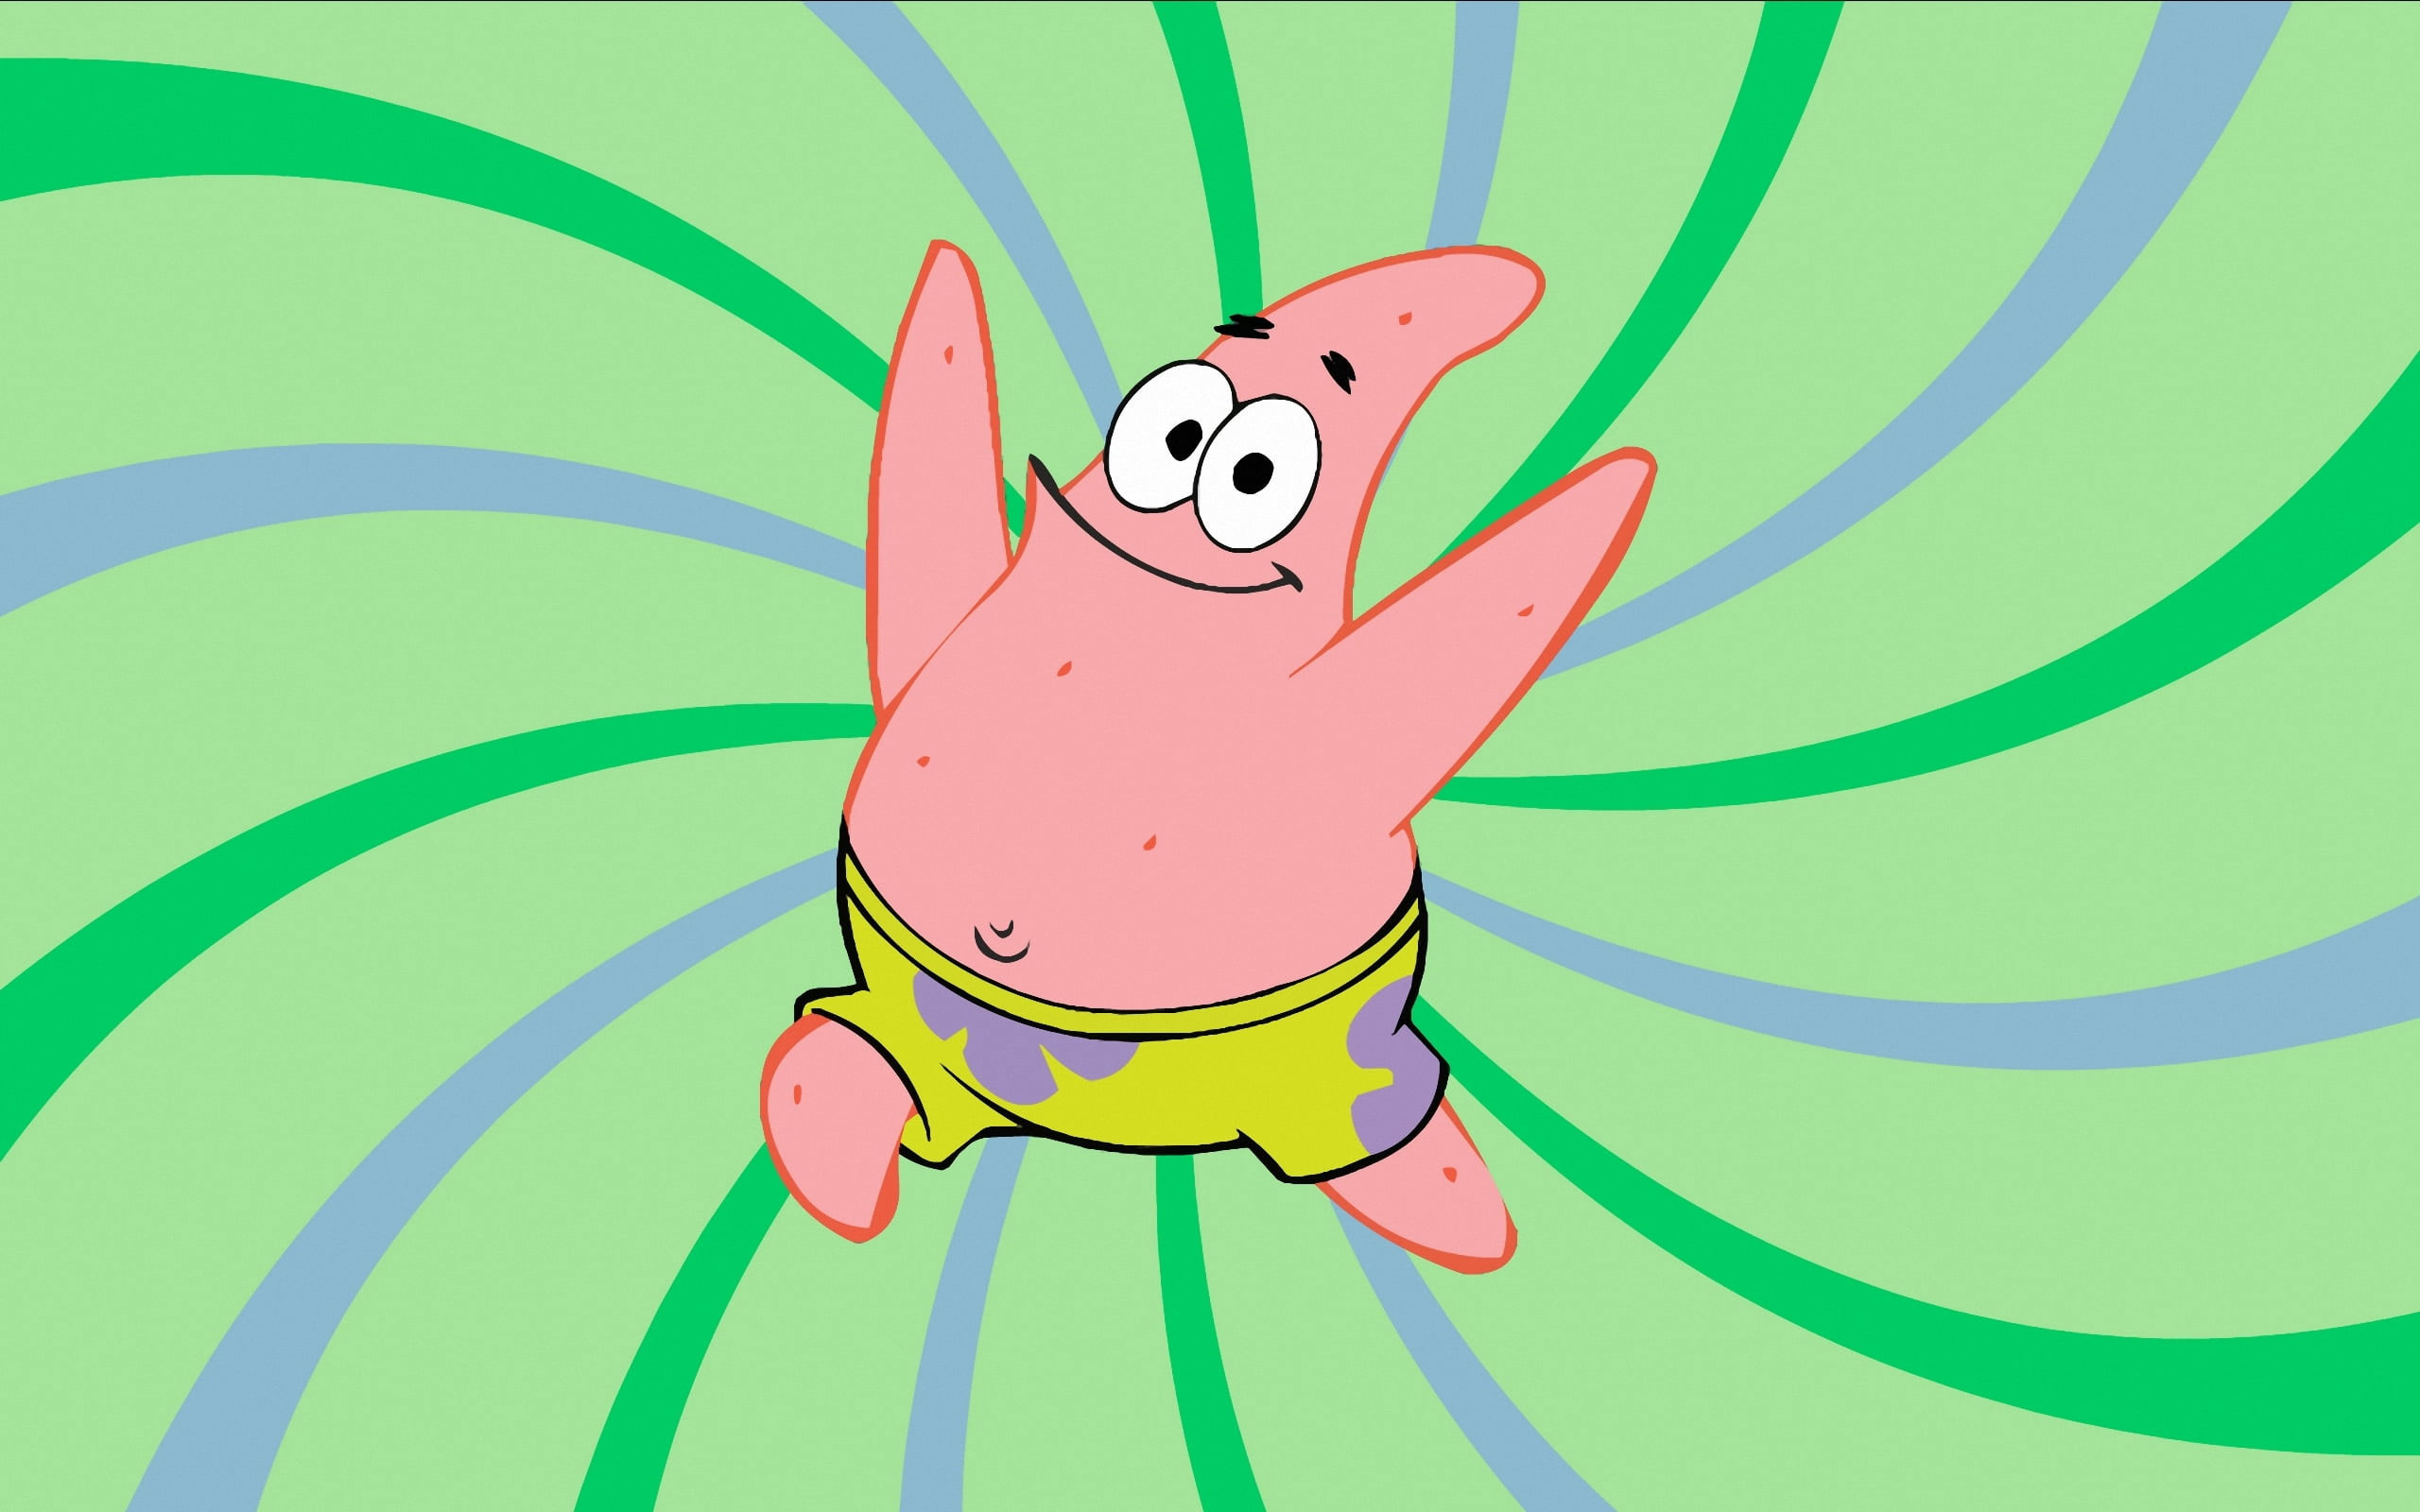 Wallpaper Nickelodeon Spongebob Squarepants Patrick Star